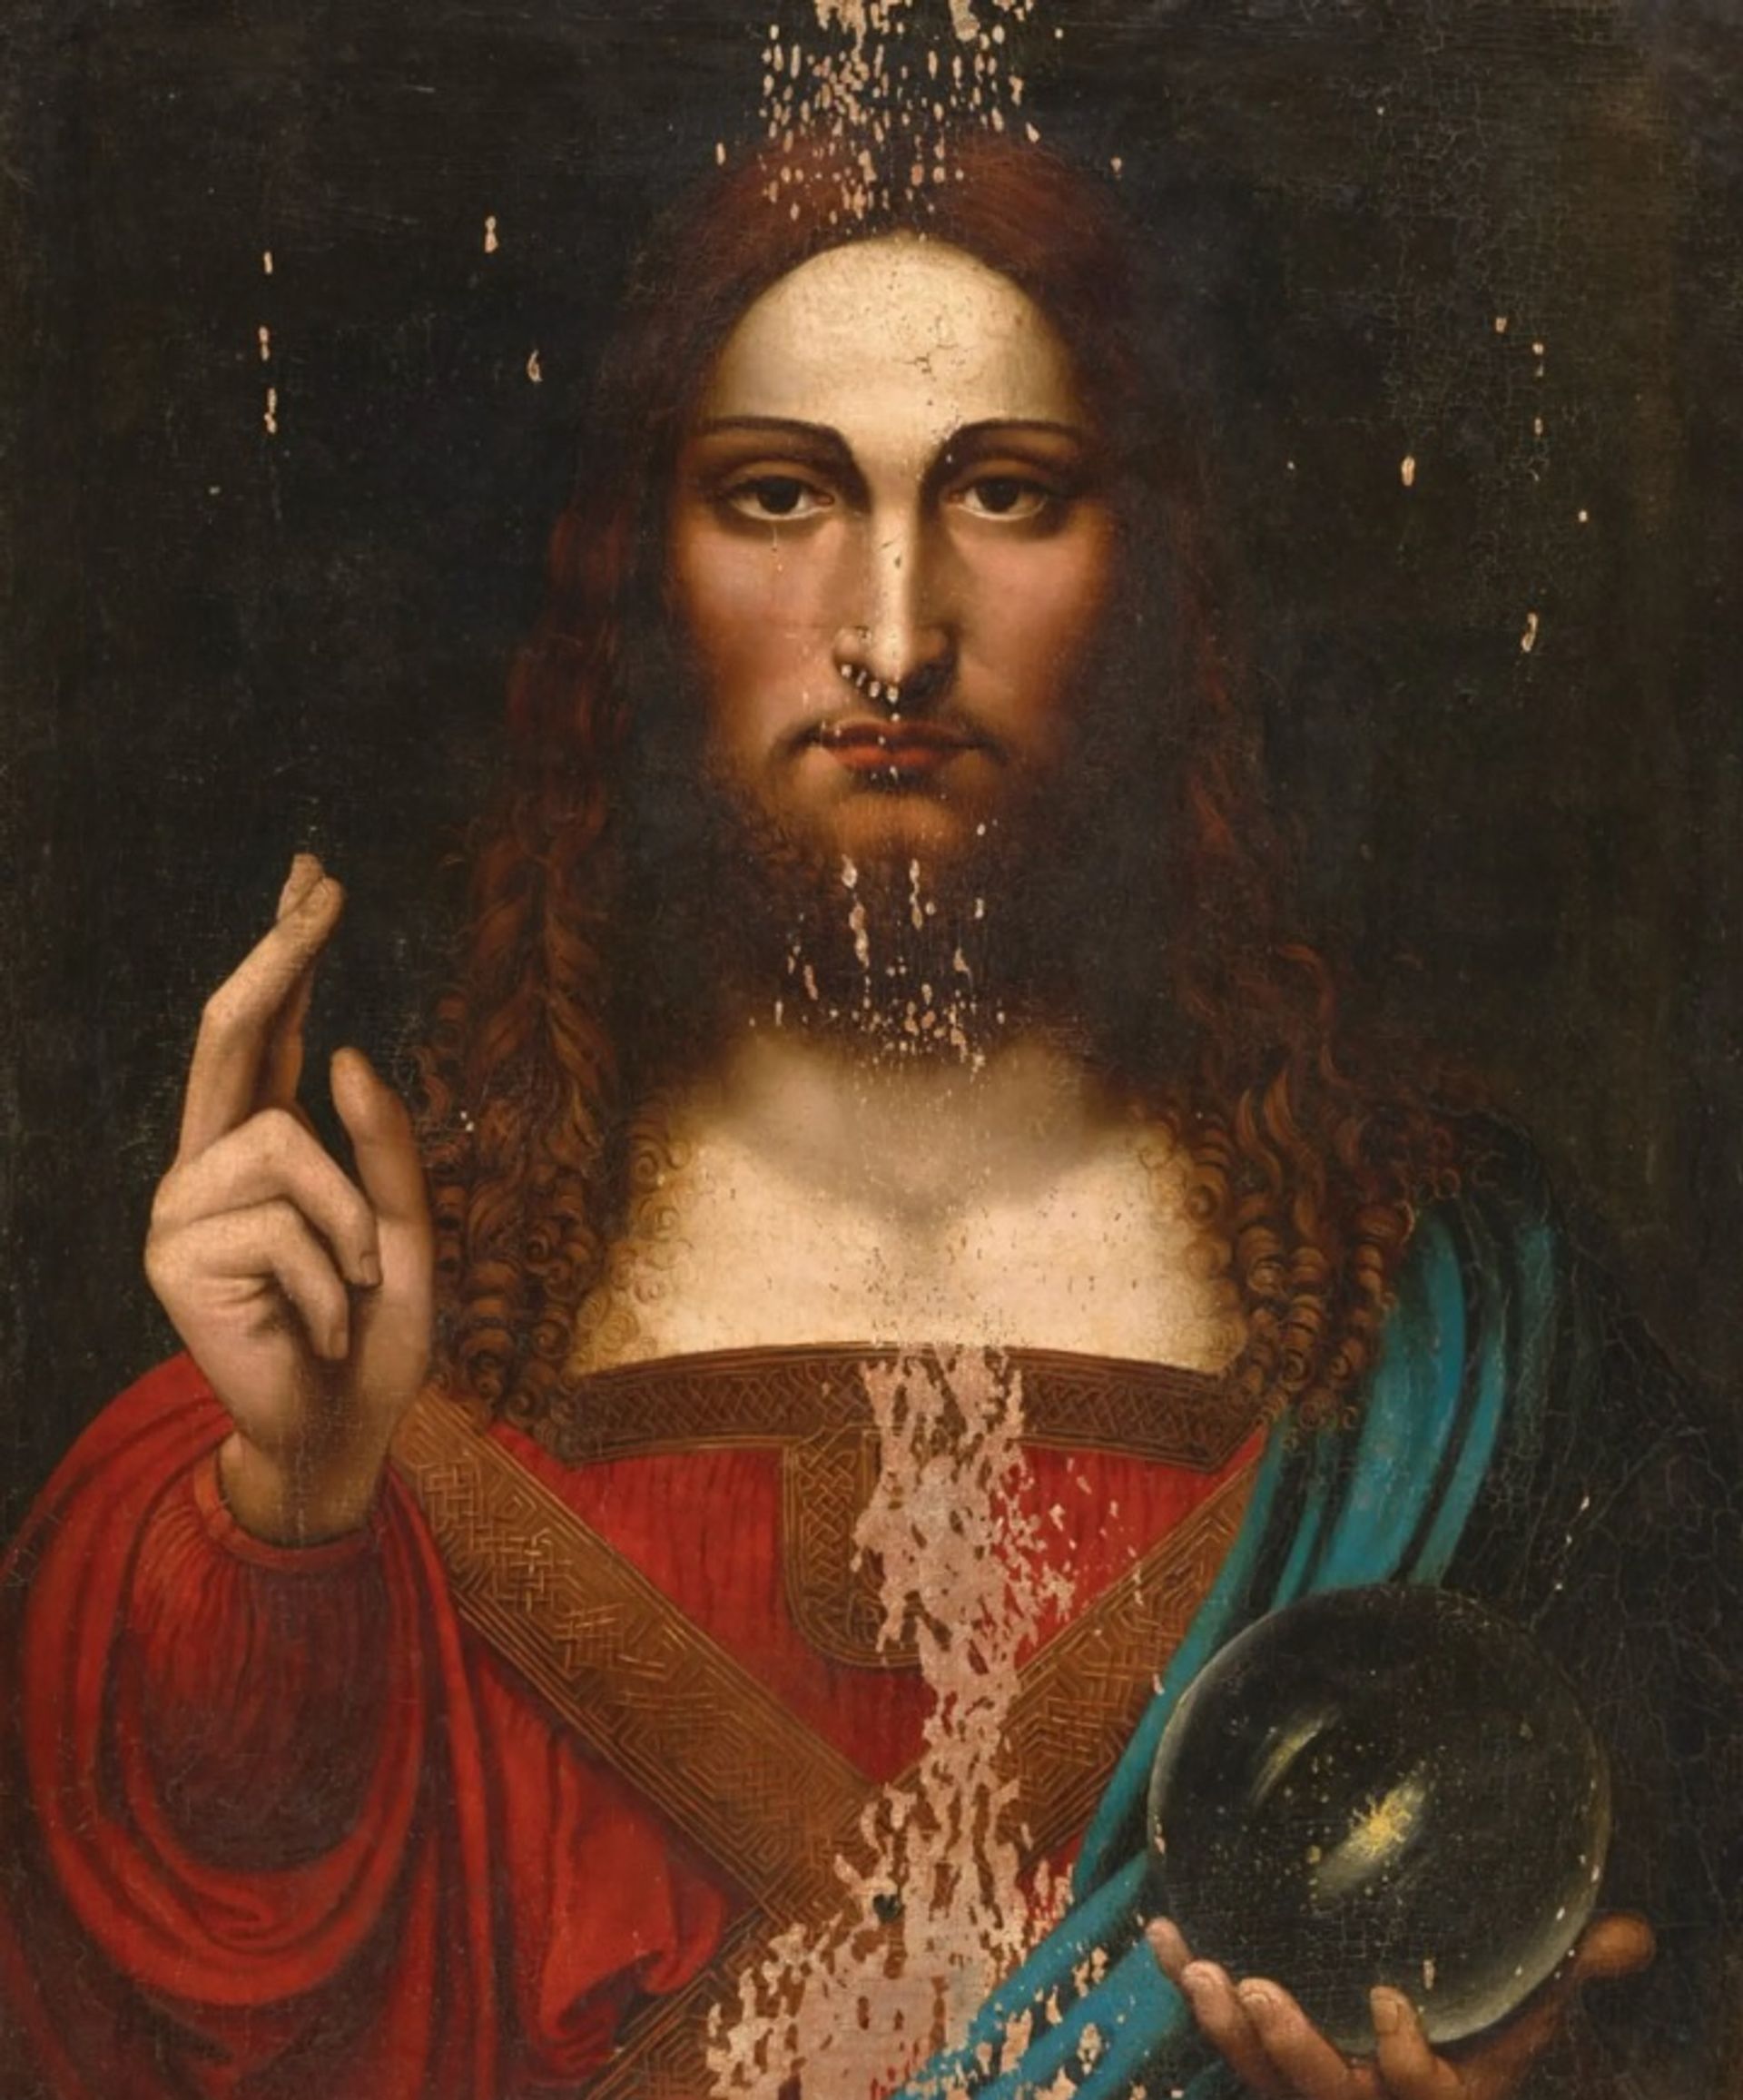 עותקSalvator Mundi , נוצר אחרי לאונרדו (בסביבות 1600) ונמכר במיליון יורו בכריסטי'ס

באדיבות כריסטי'ס